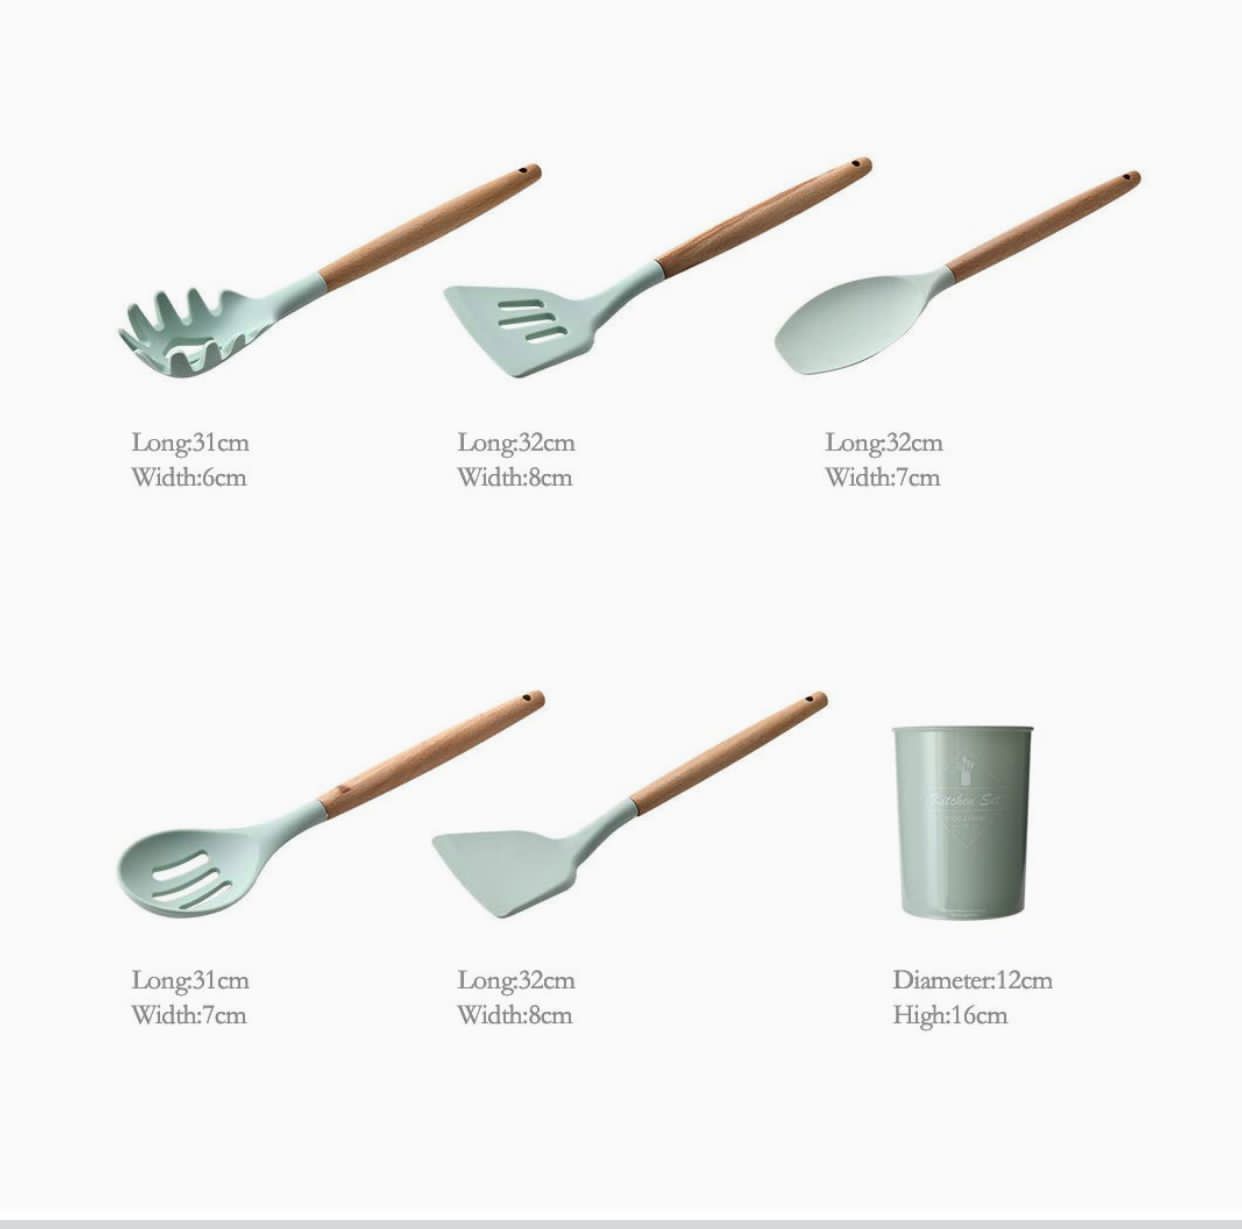 "ComCreate" سیلیکونی آشپزخانه آشپزی 11 عددی ابزار ظروف چوبی برای ظروف نچسب، ست ظروف پخت و پز با دسته چوب بامبو برای ظروف نچسب، ست قاشق انبر غیر سمی (6125)